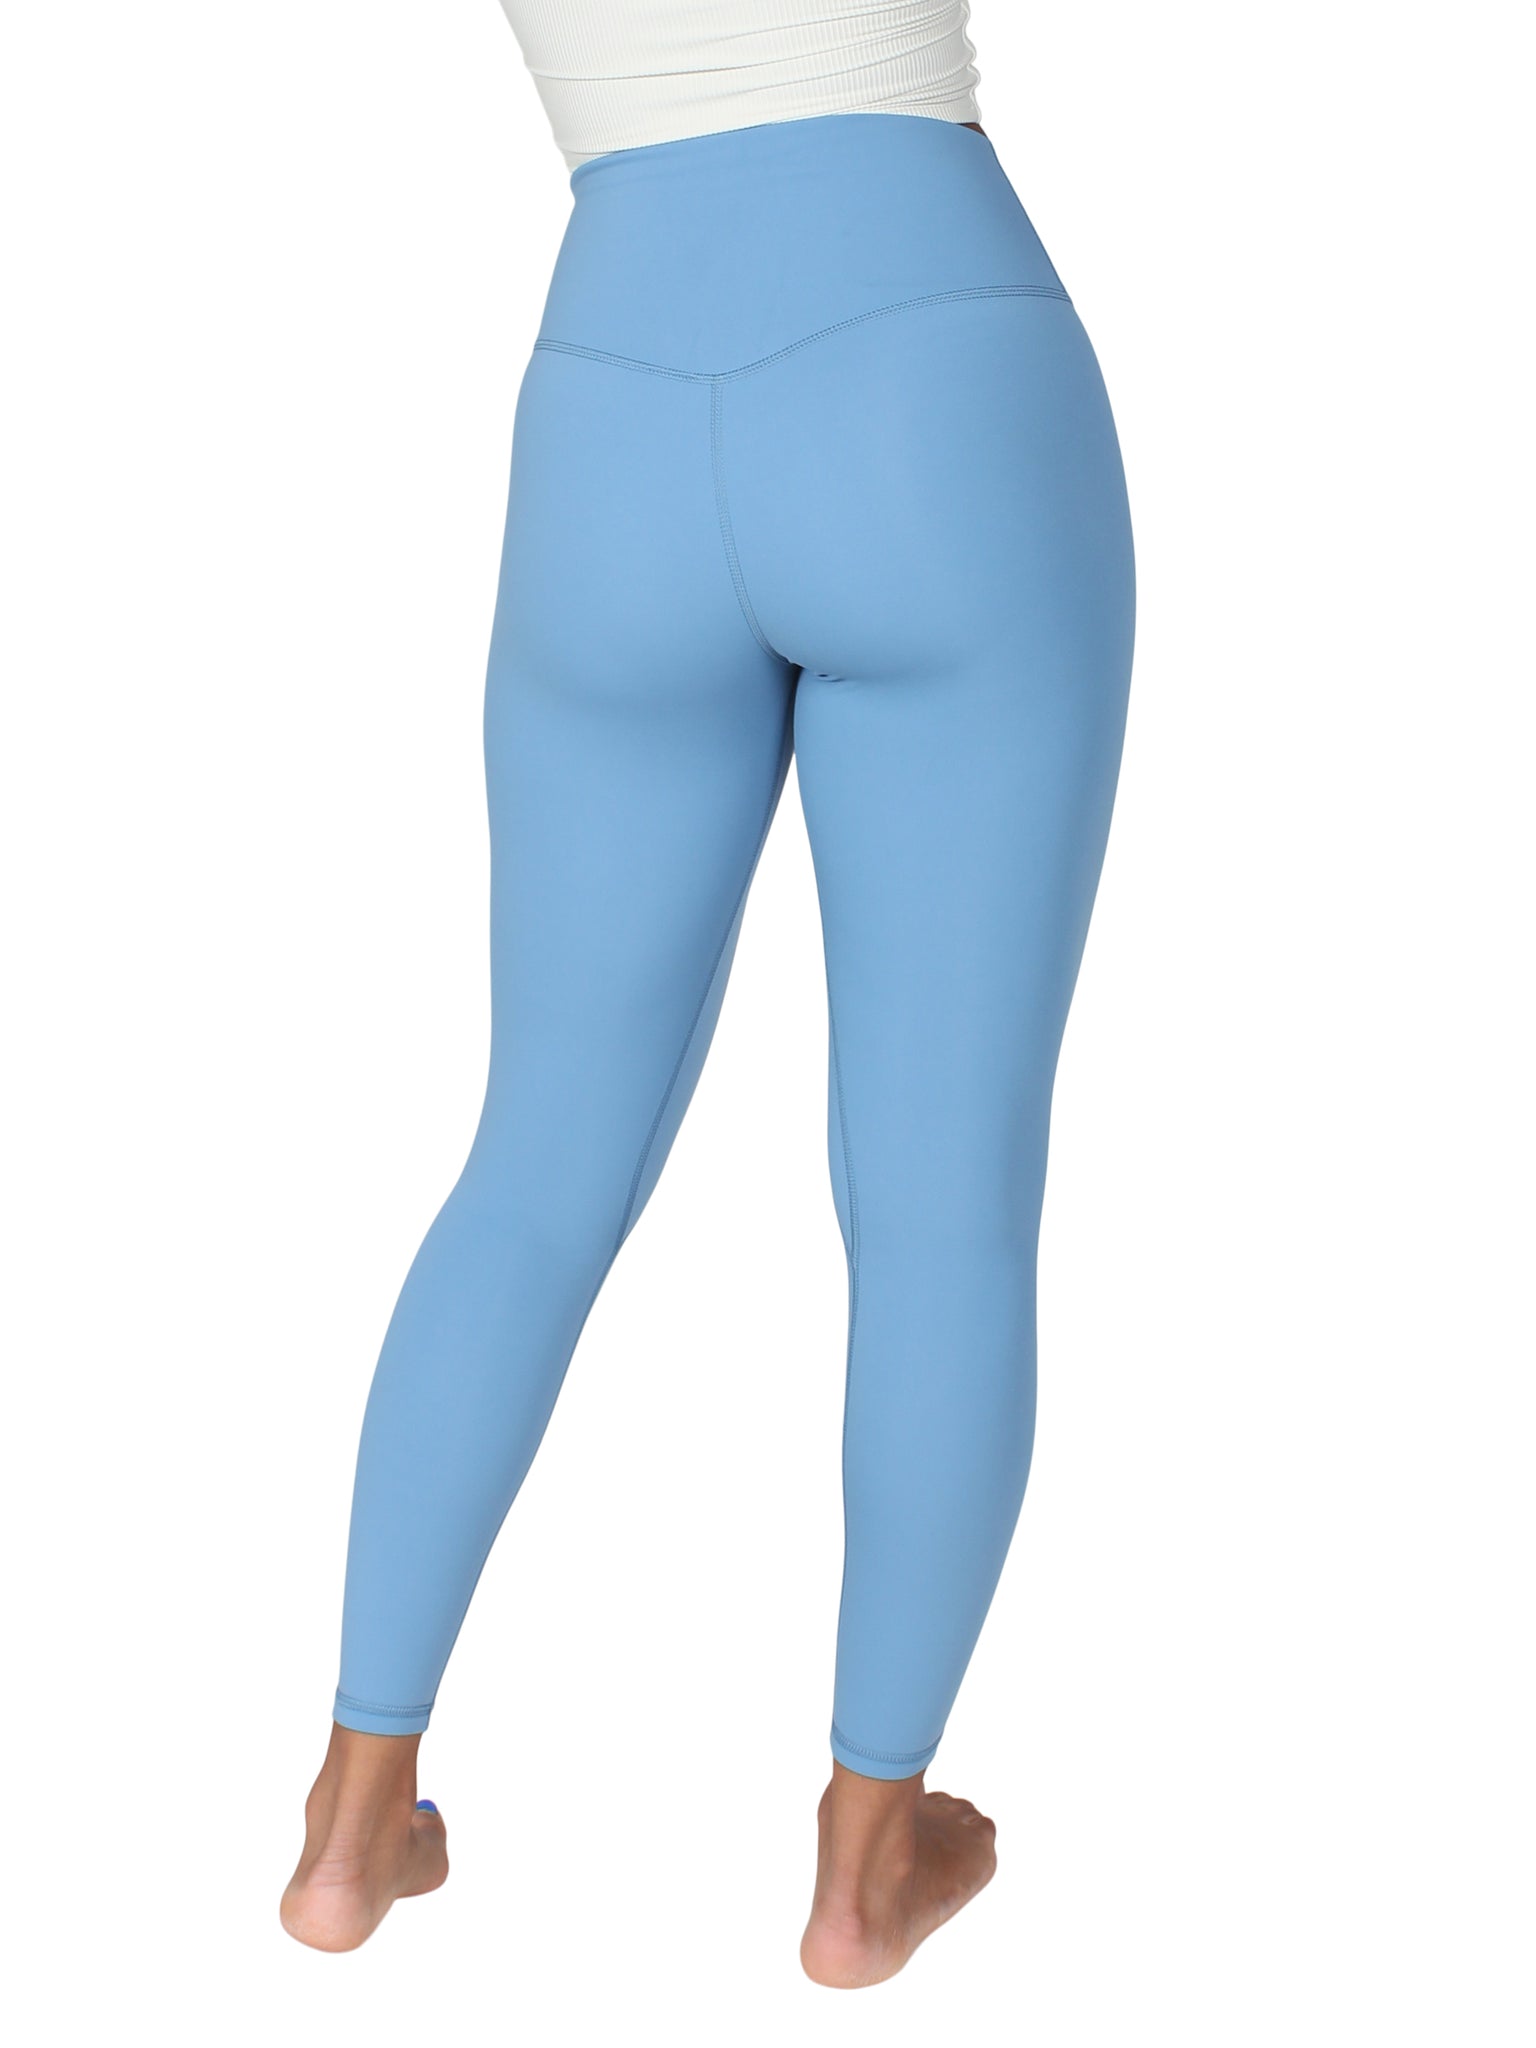 Colorfulkoala yoga pants. Size small. Navy blue. Leggings. - $14